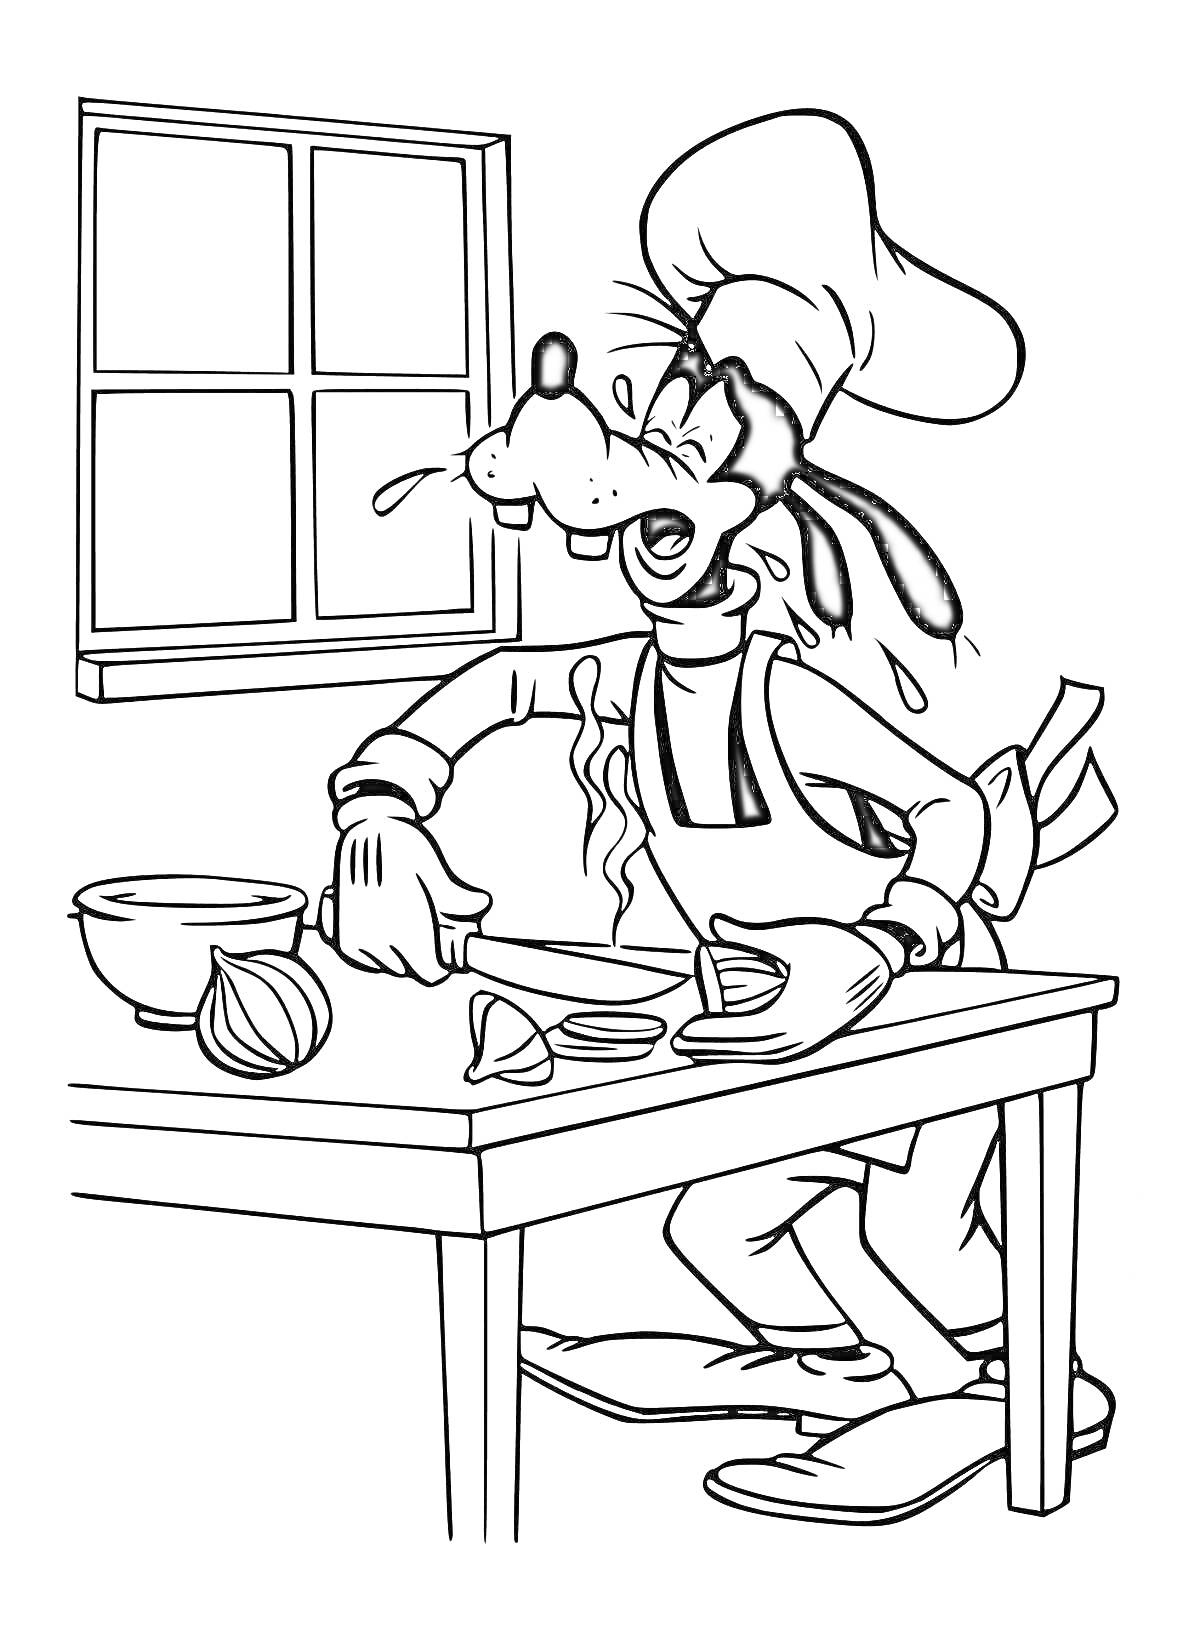 Раскраска Персонаж в шеф-поварском колпаке режет лук на кухне, рядом миска, окно на заднем плане